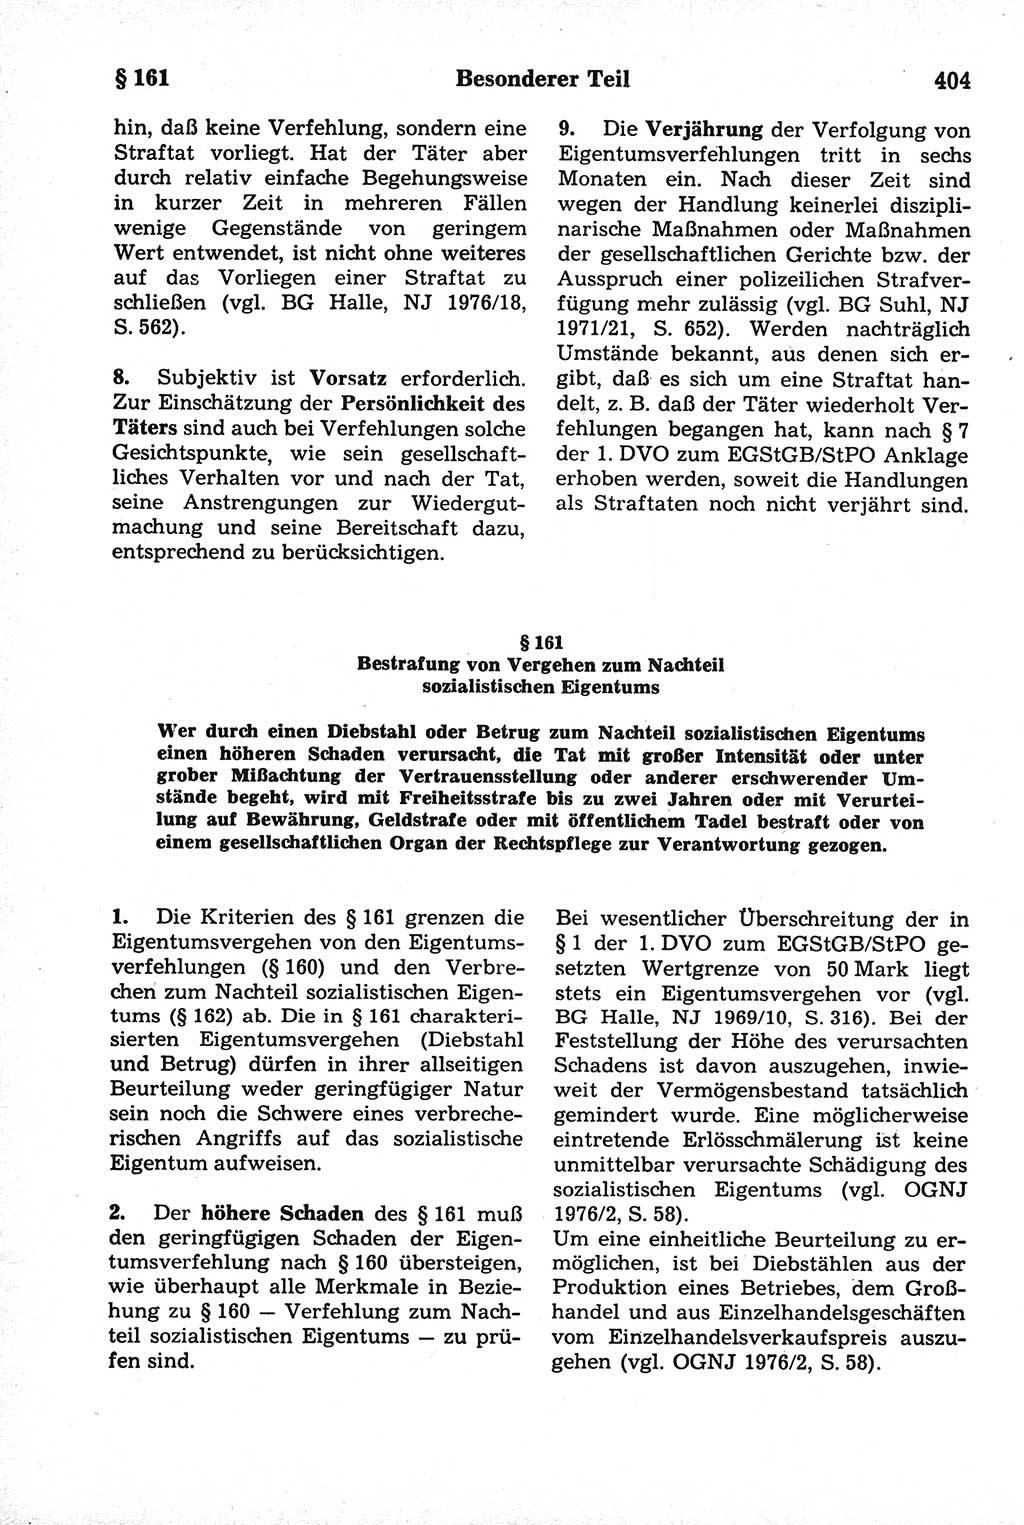 Strafrecht der Deutschen Demokratischen Republik (DDR), Kommentar zum Strafgesetzbuch (StGB) 1981, Seite 404 (Strafr. DDR Komm. StGB 1981, S. 404)